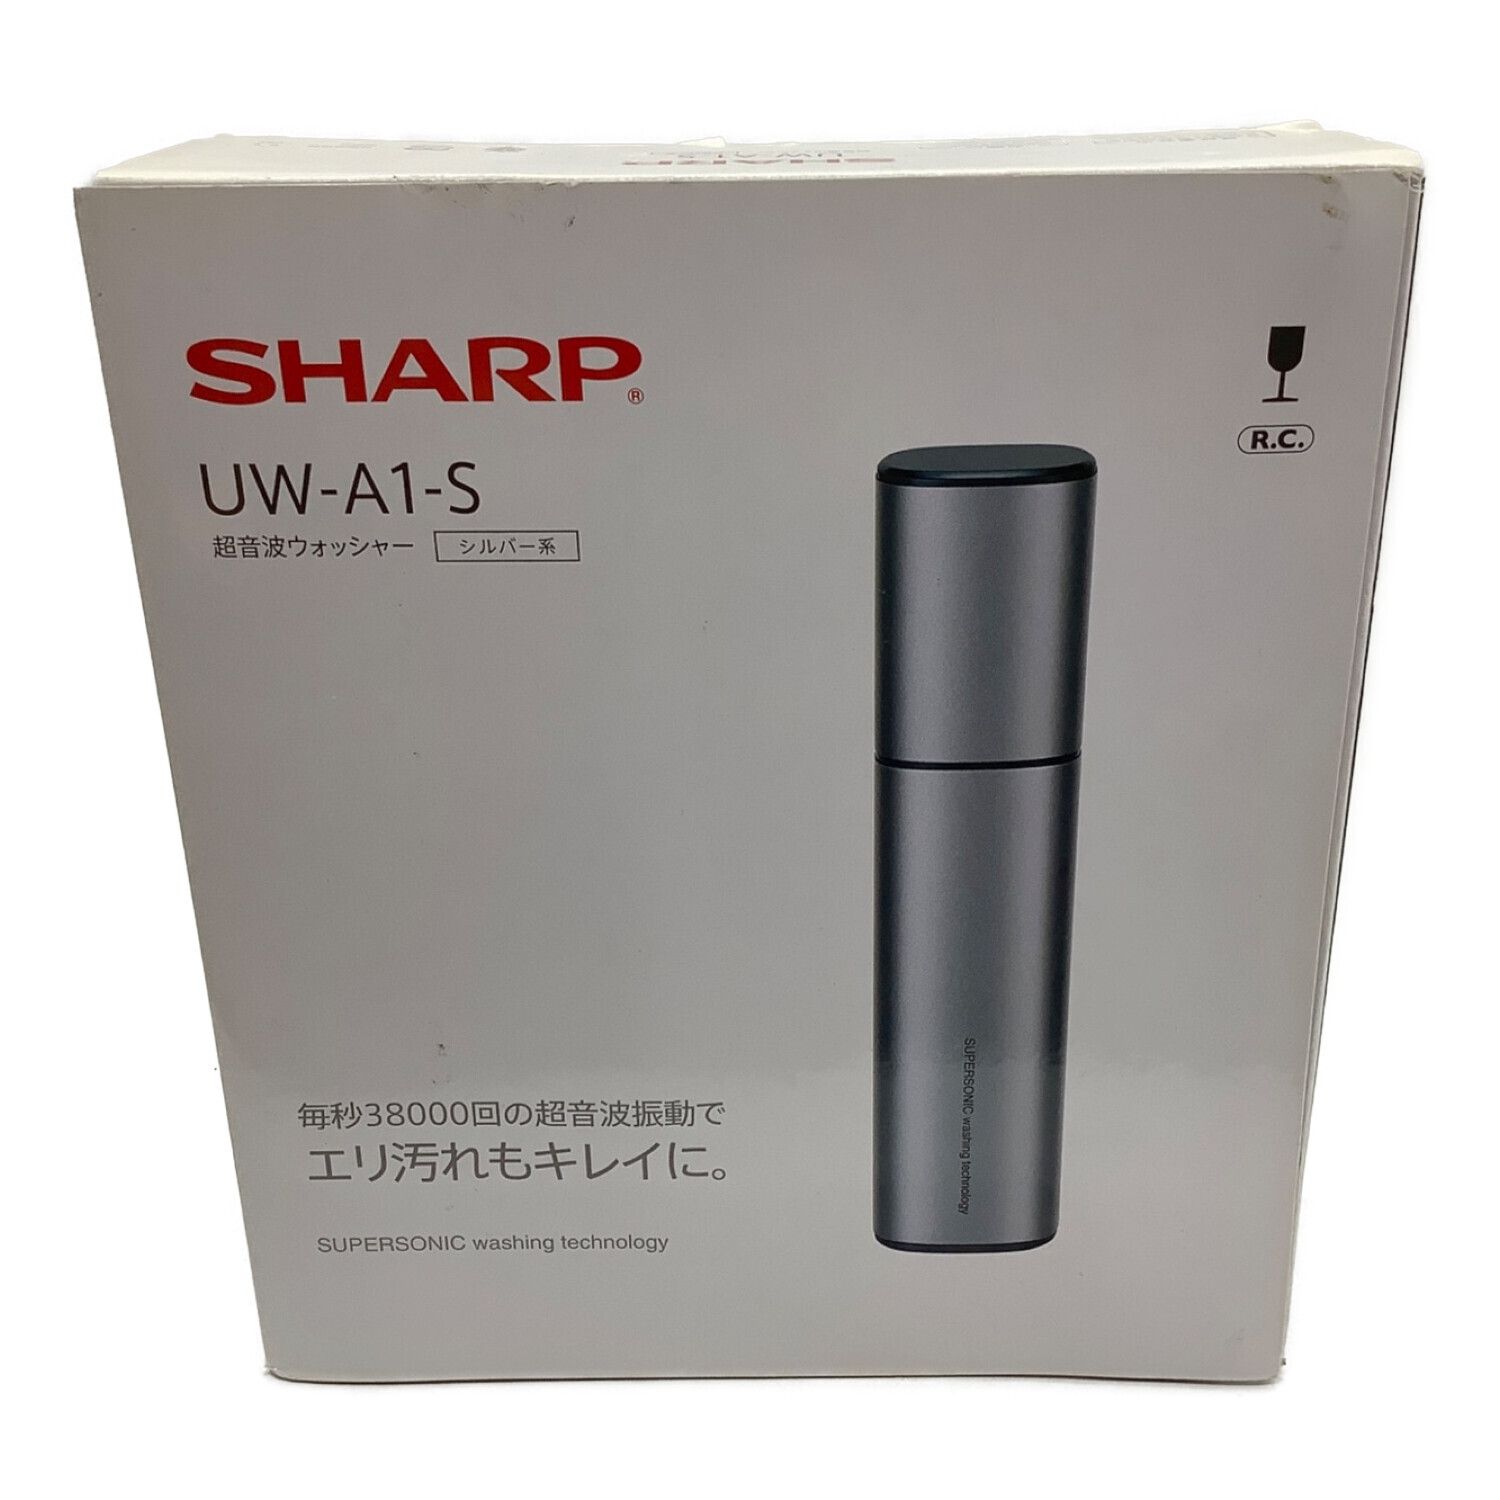 【美品】シャープ SHARP UW-A1-S [超音波ウォッシャー シルバー